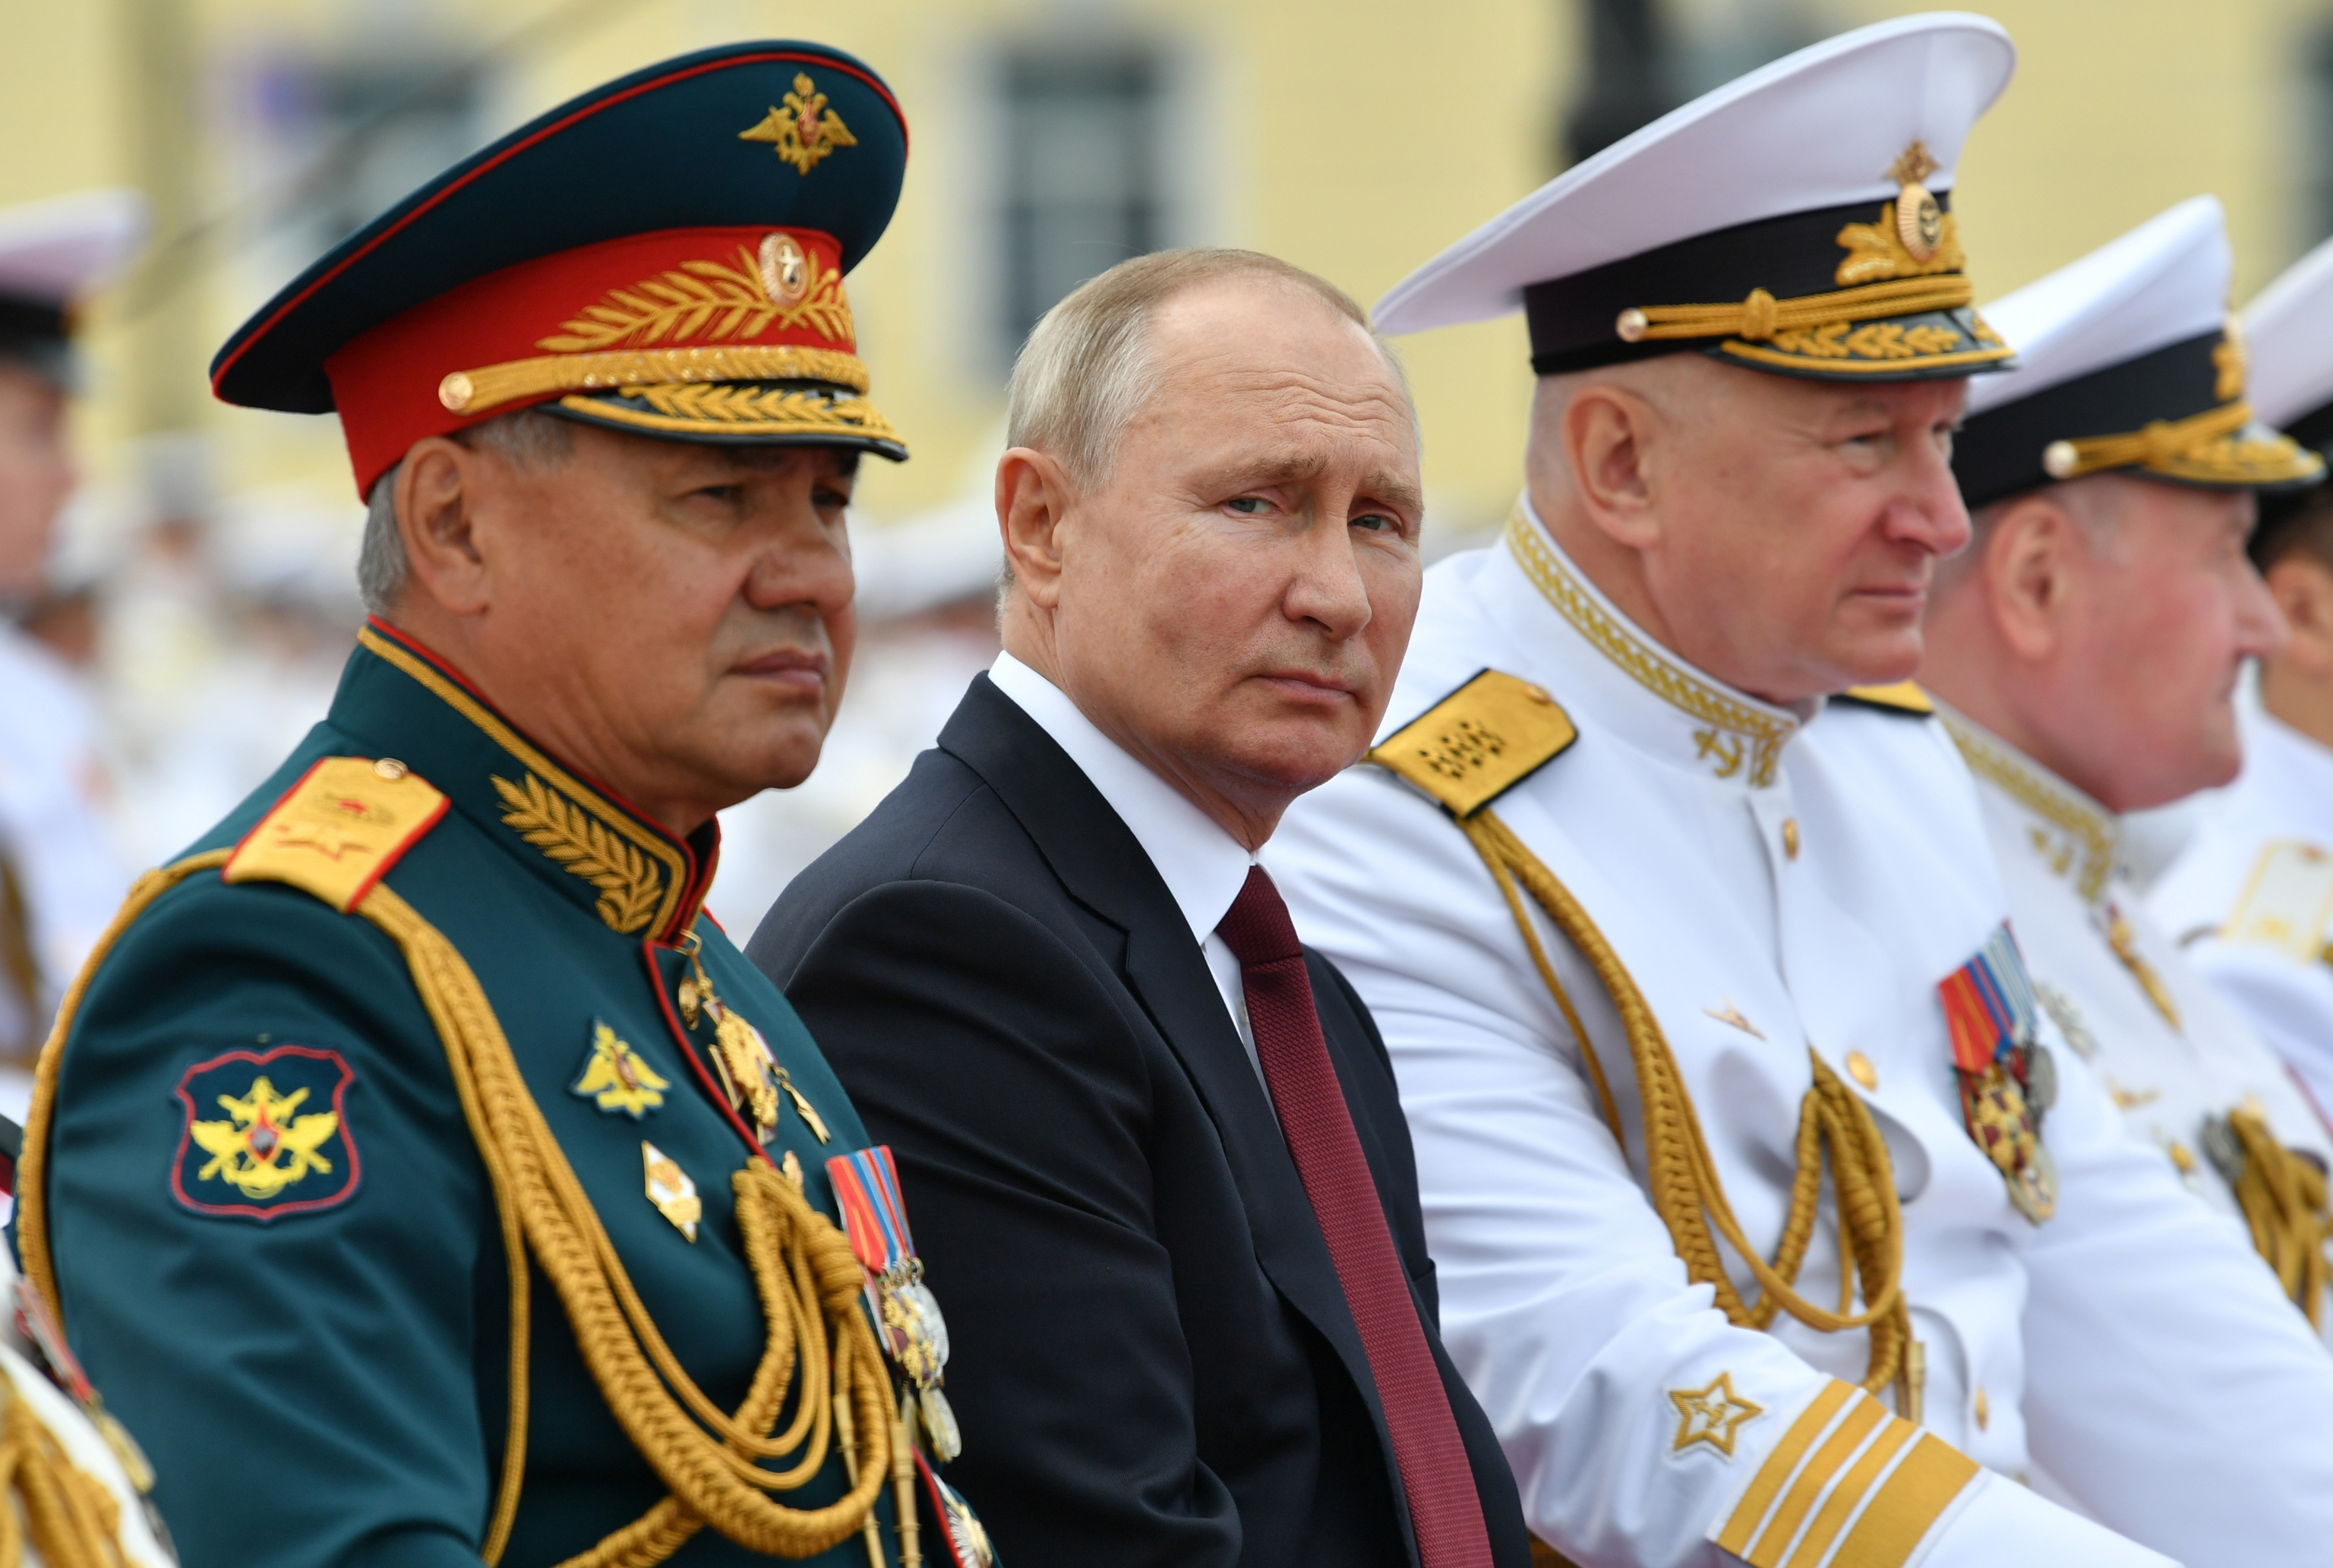 ¿Qué ha pasado con Shoigu, el poderoso ministro de Putin? Otra purga en la corte del Zar